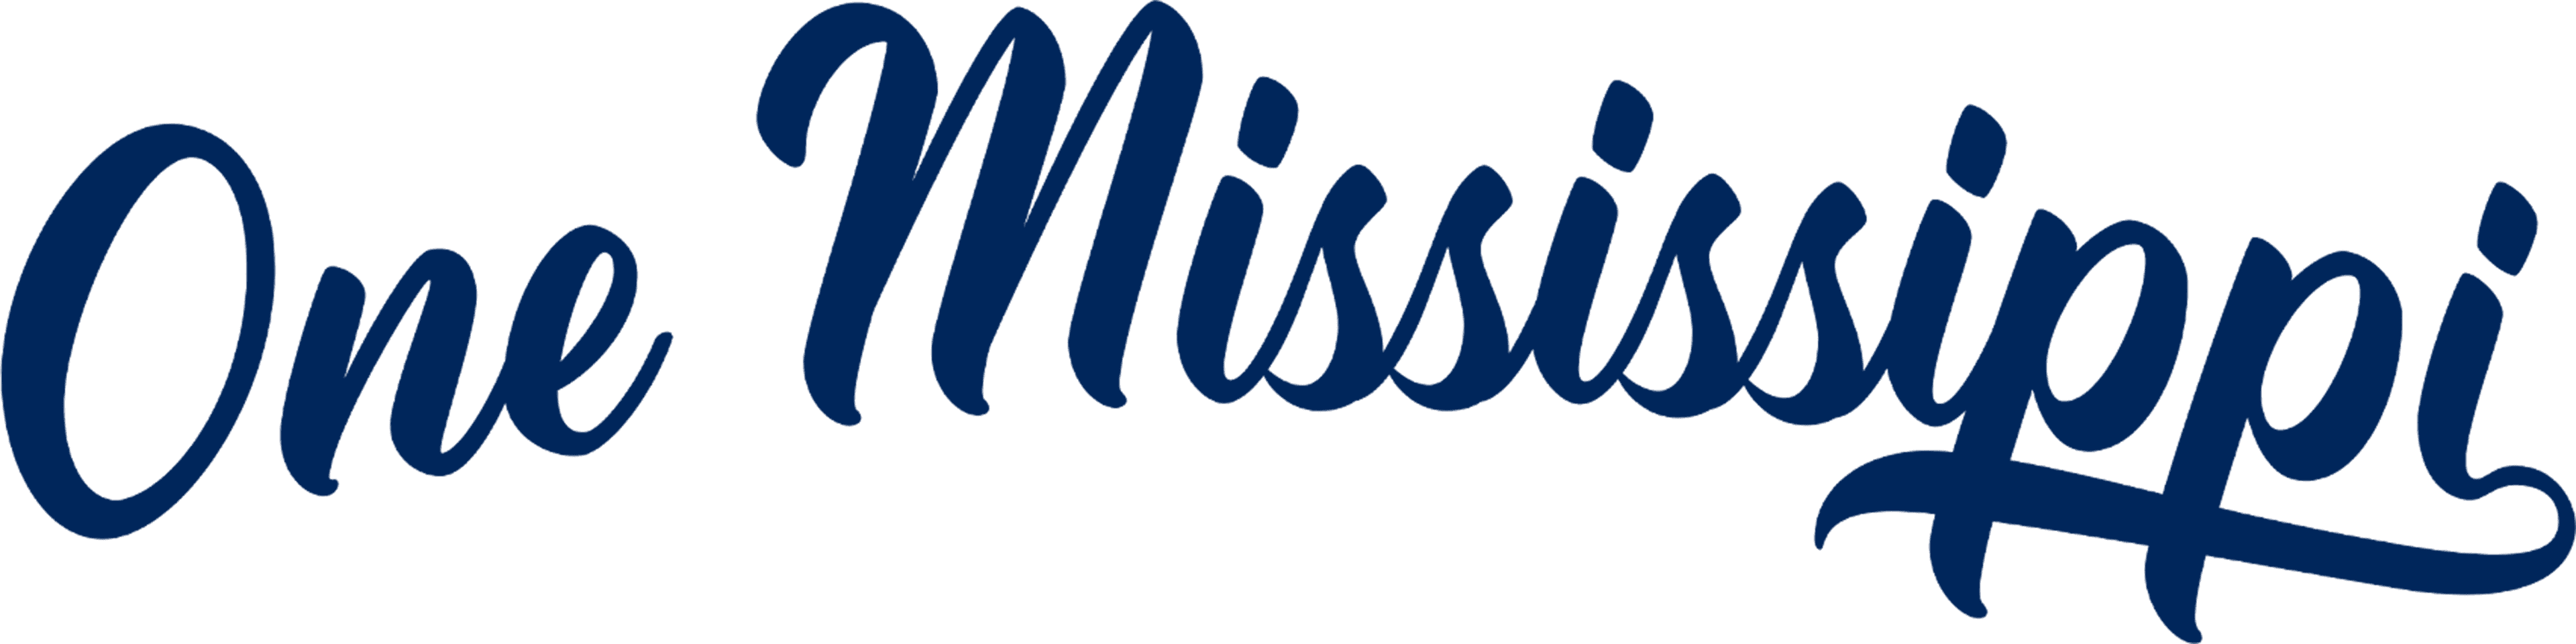 One Mississippi logo